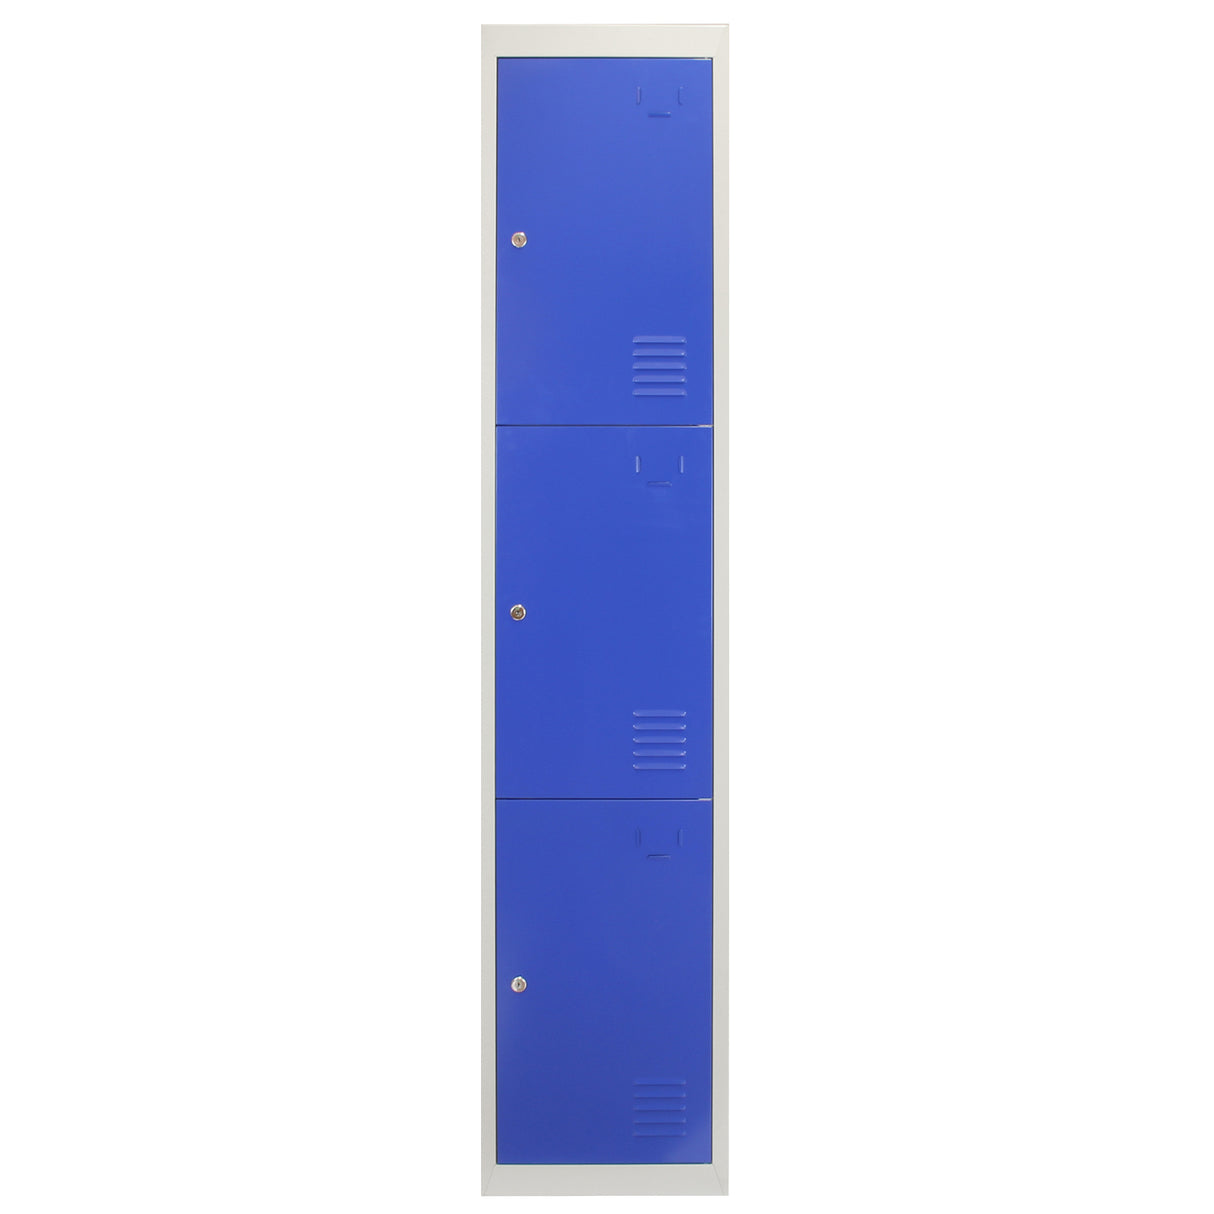 3 x casiers de rangement en métal - Trois portes, bleu - A plat